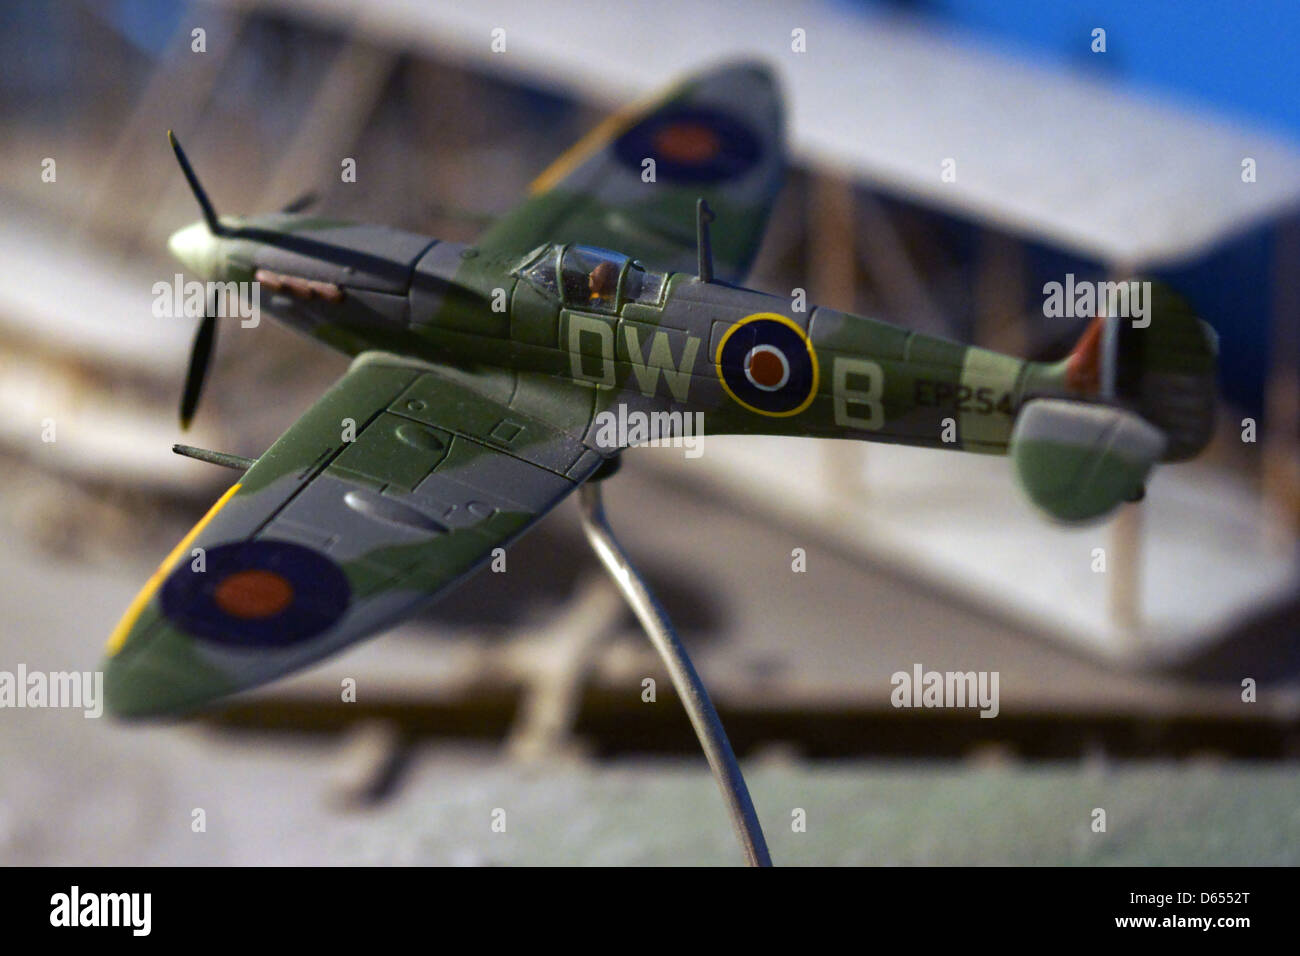 Spitfire flying model plane stand mur bleu poussière Banque D'Images